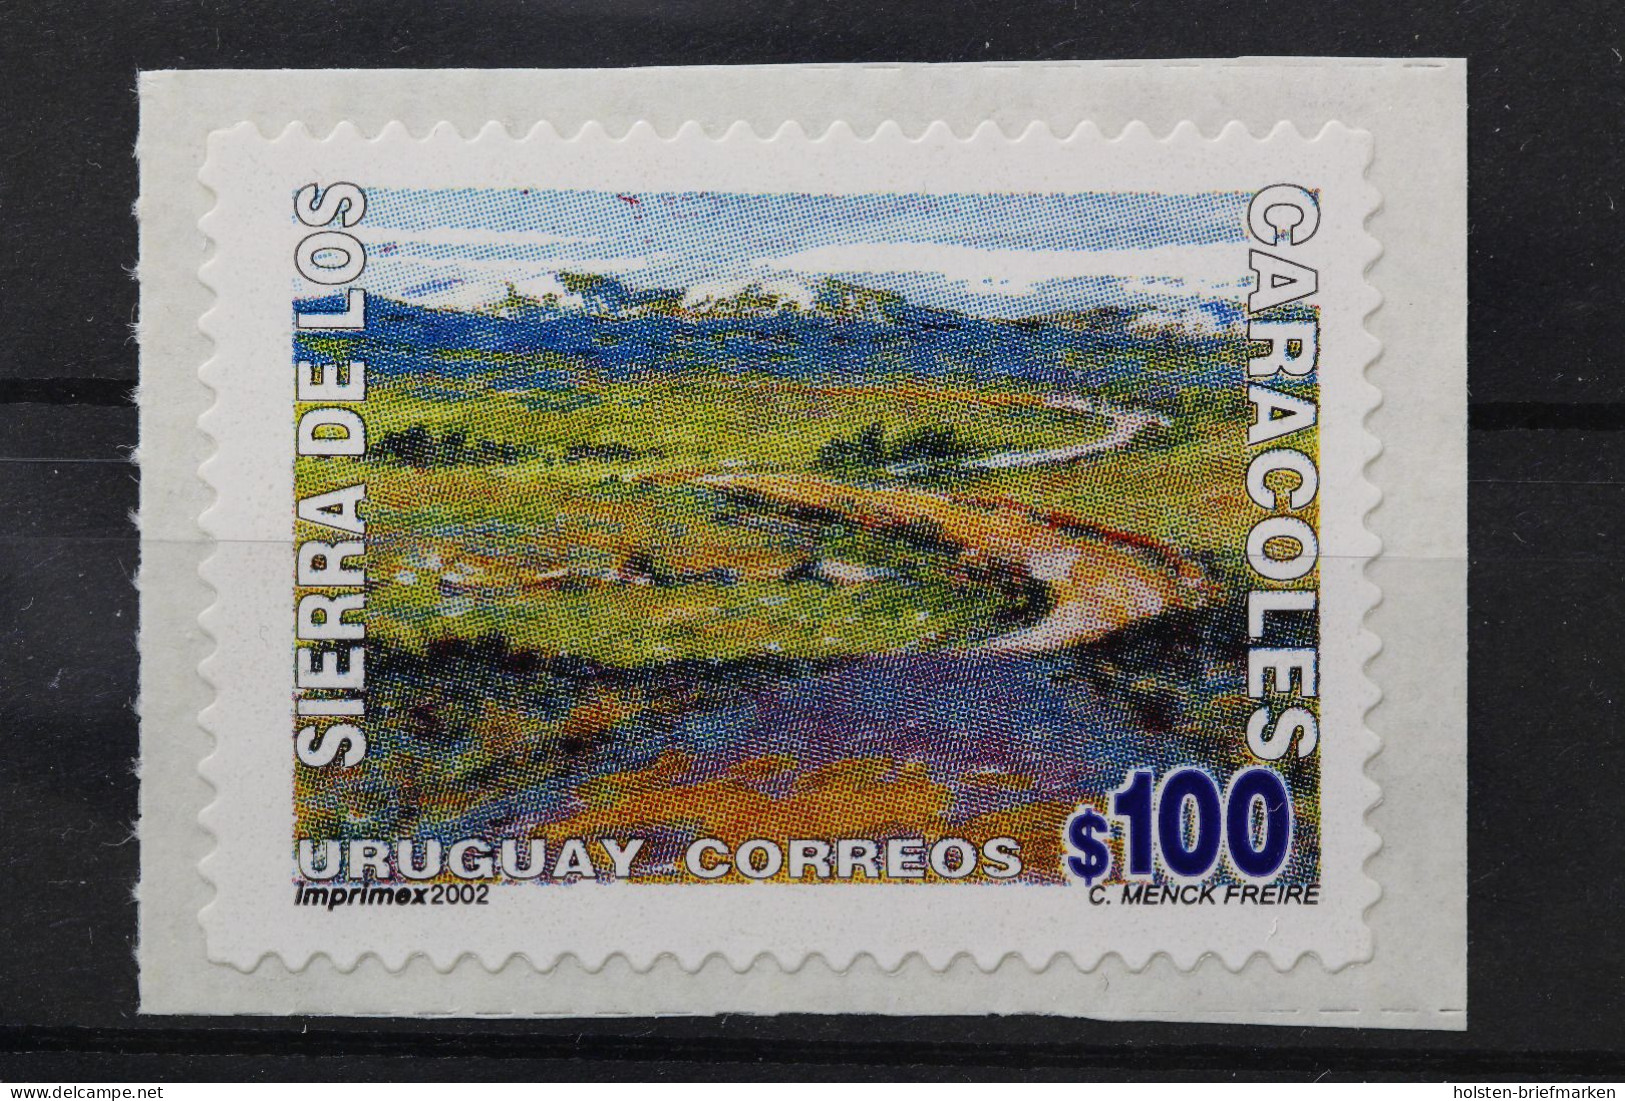 Uruguay, MiNr. 2652 Skl., Postfrisch - Uruguay